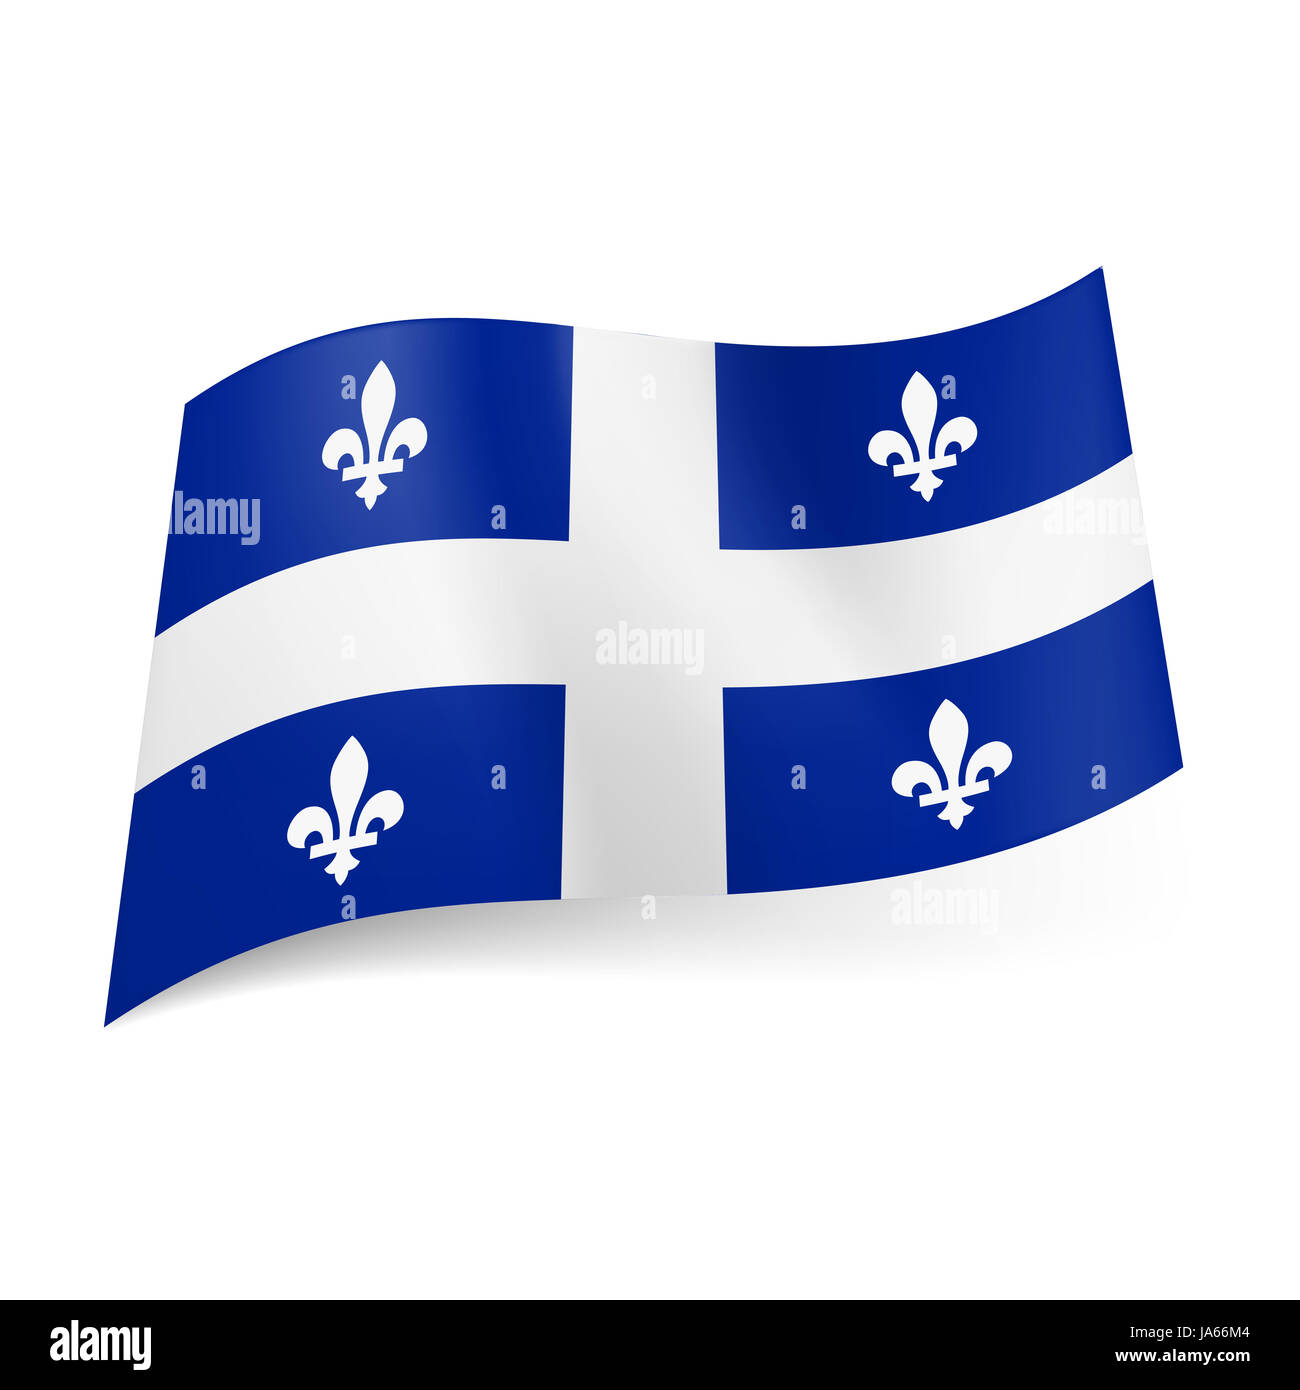 Flagge Von Quebec Provinz Von Kanada Zentrale Weisses Kreuz Und Symmetrische Muster Aus Weissen Fleurs De Lis Auf Blauem Hintergrund Stockfotografie Alamy